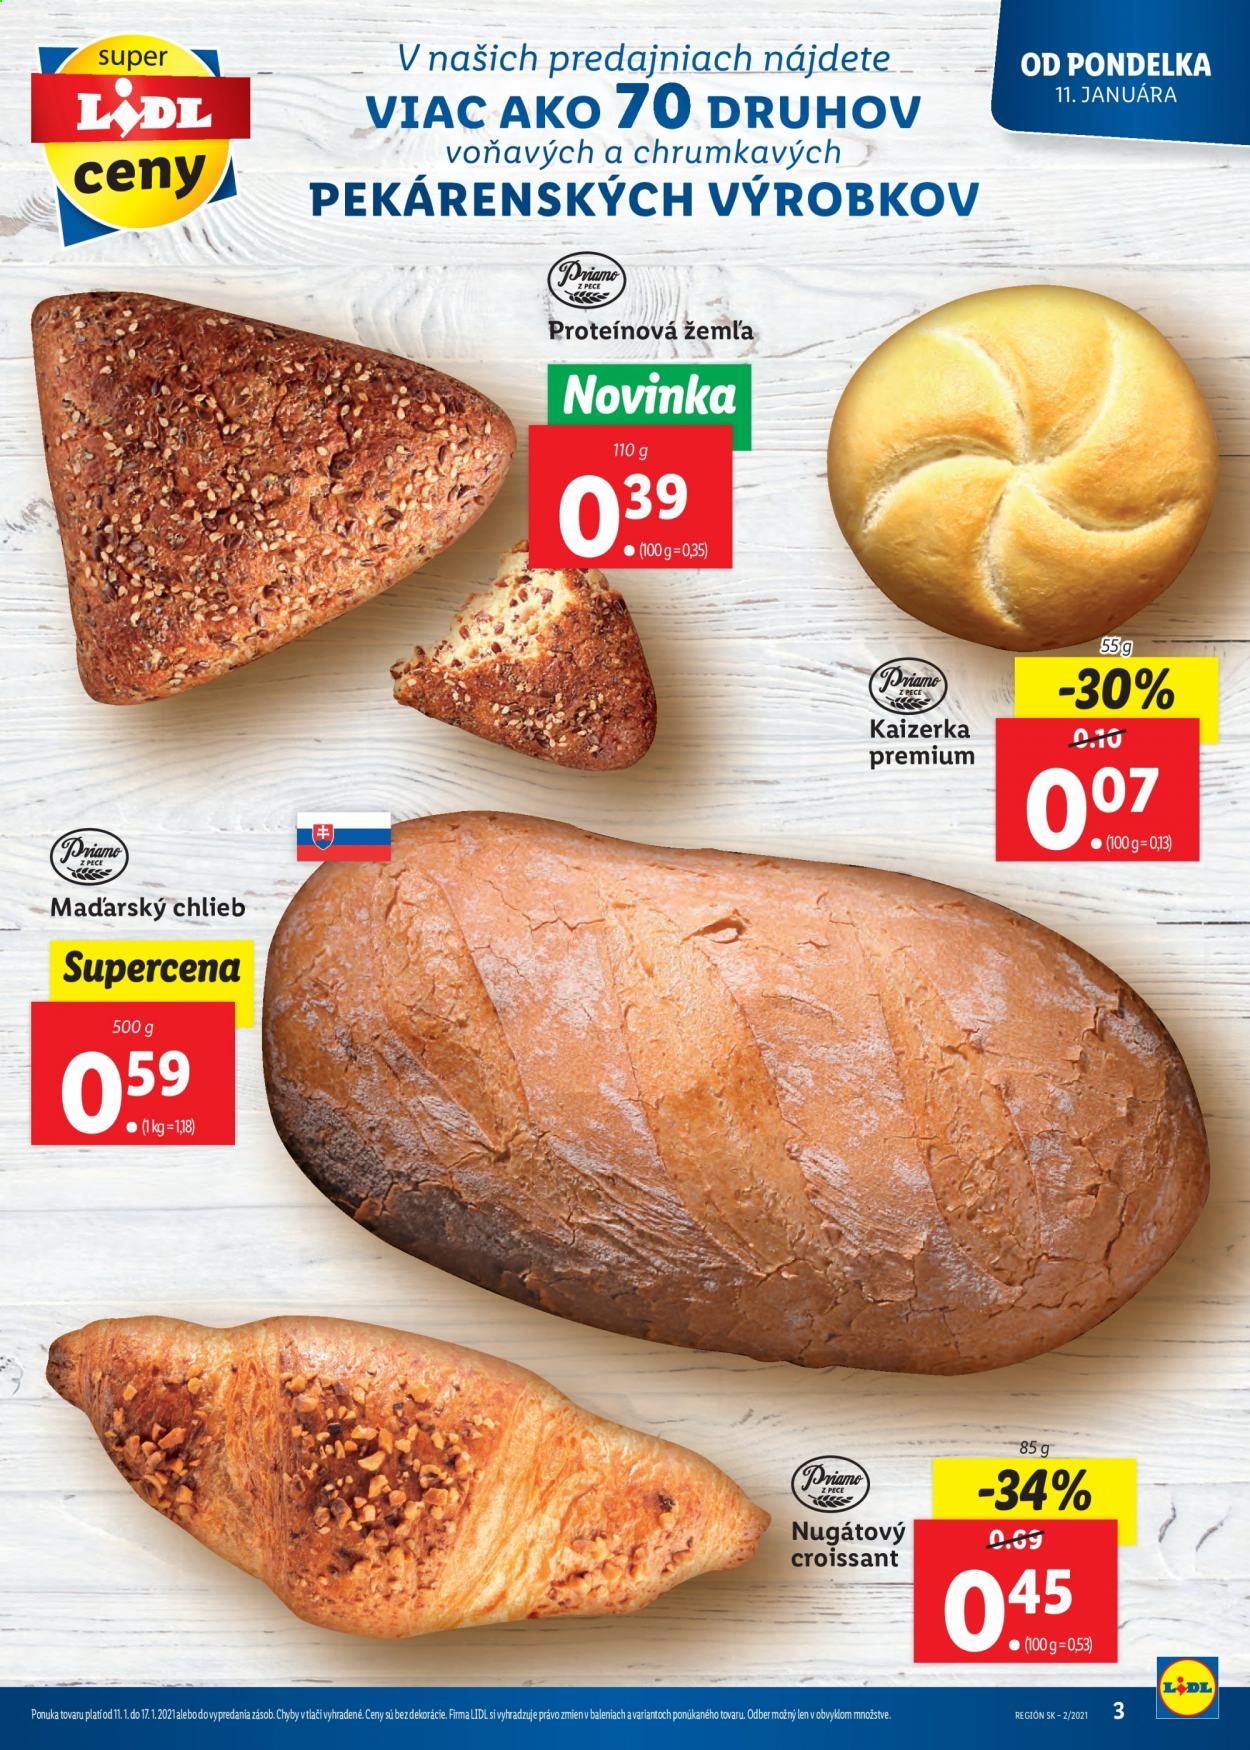 thumbnail - Leták Lidl - 11.1.2021 - 17.1.2021 - Produkty v akcii - chlieb, žemľa, kaiserka, pečivo, slané pečivo, croissant. Strana 3.